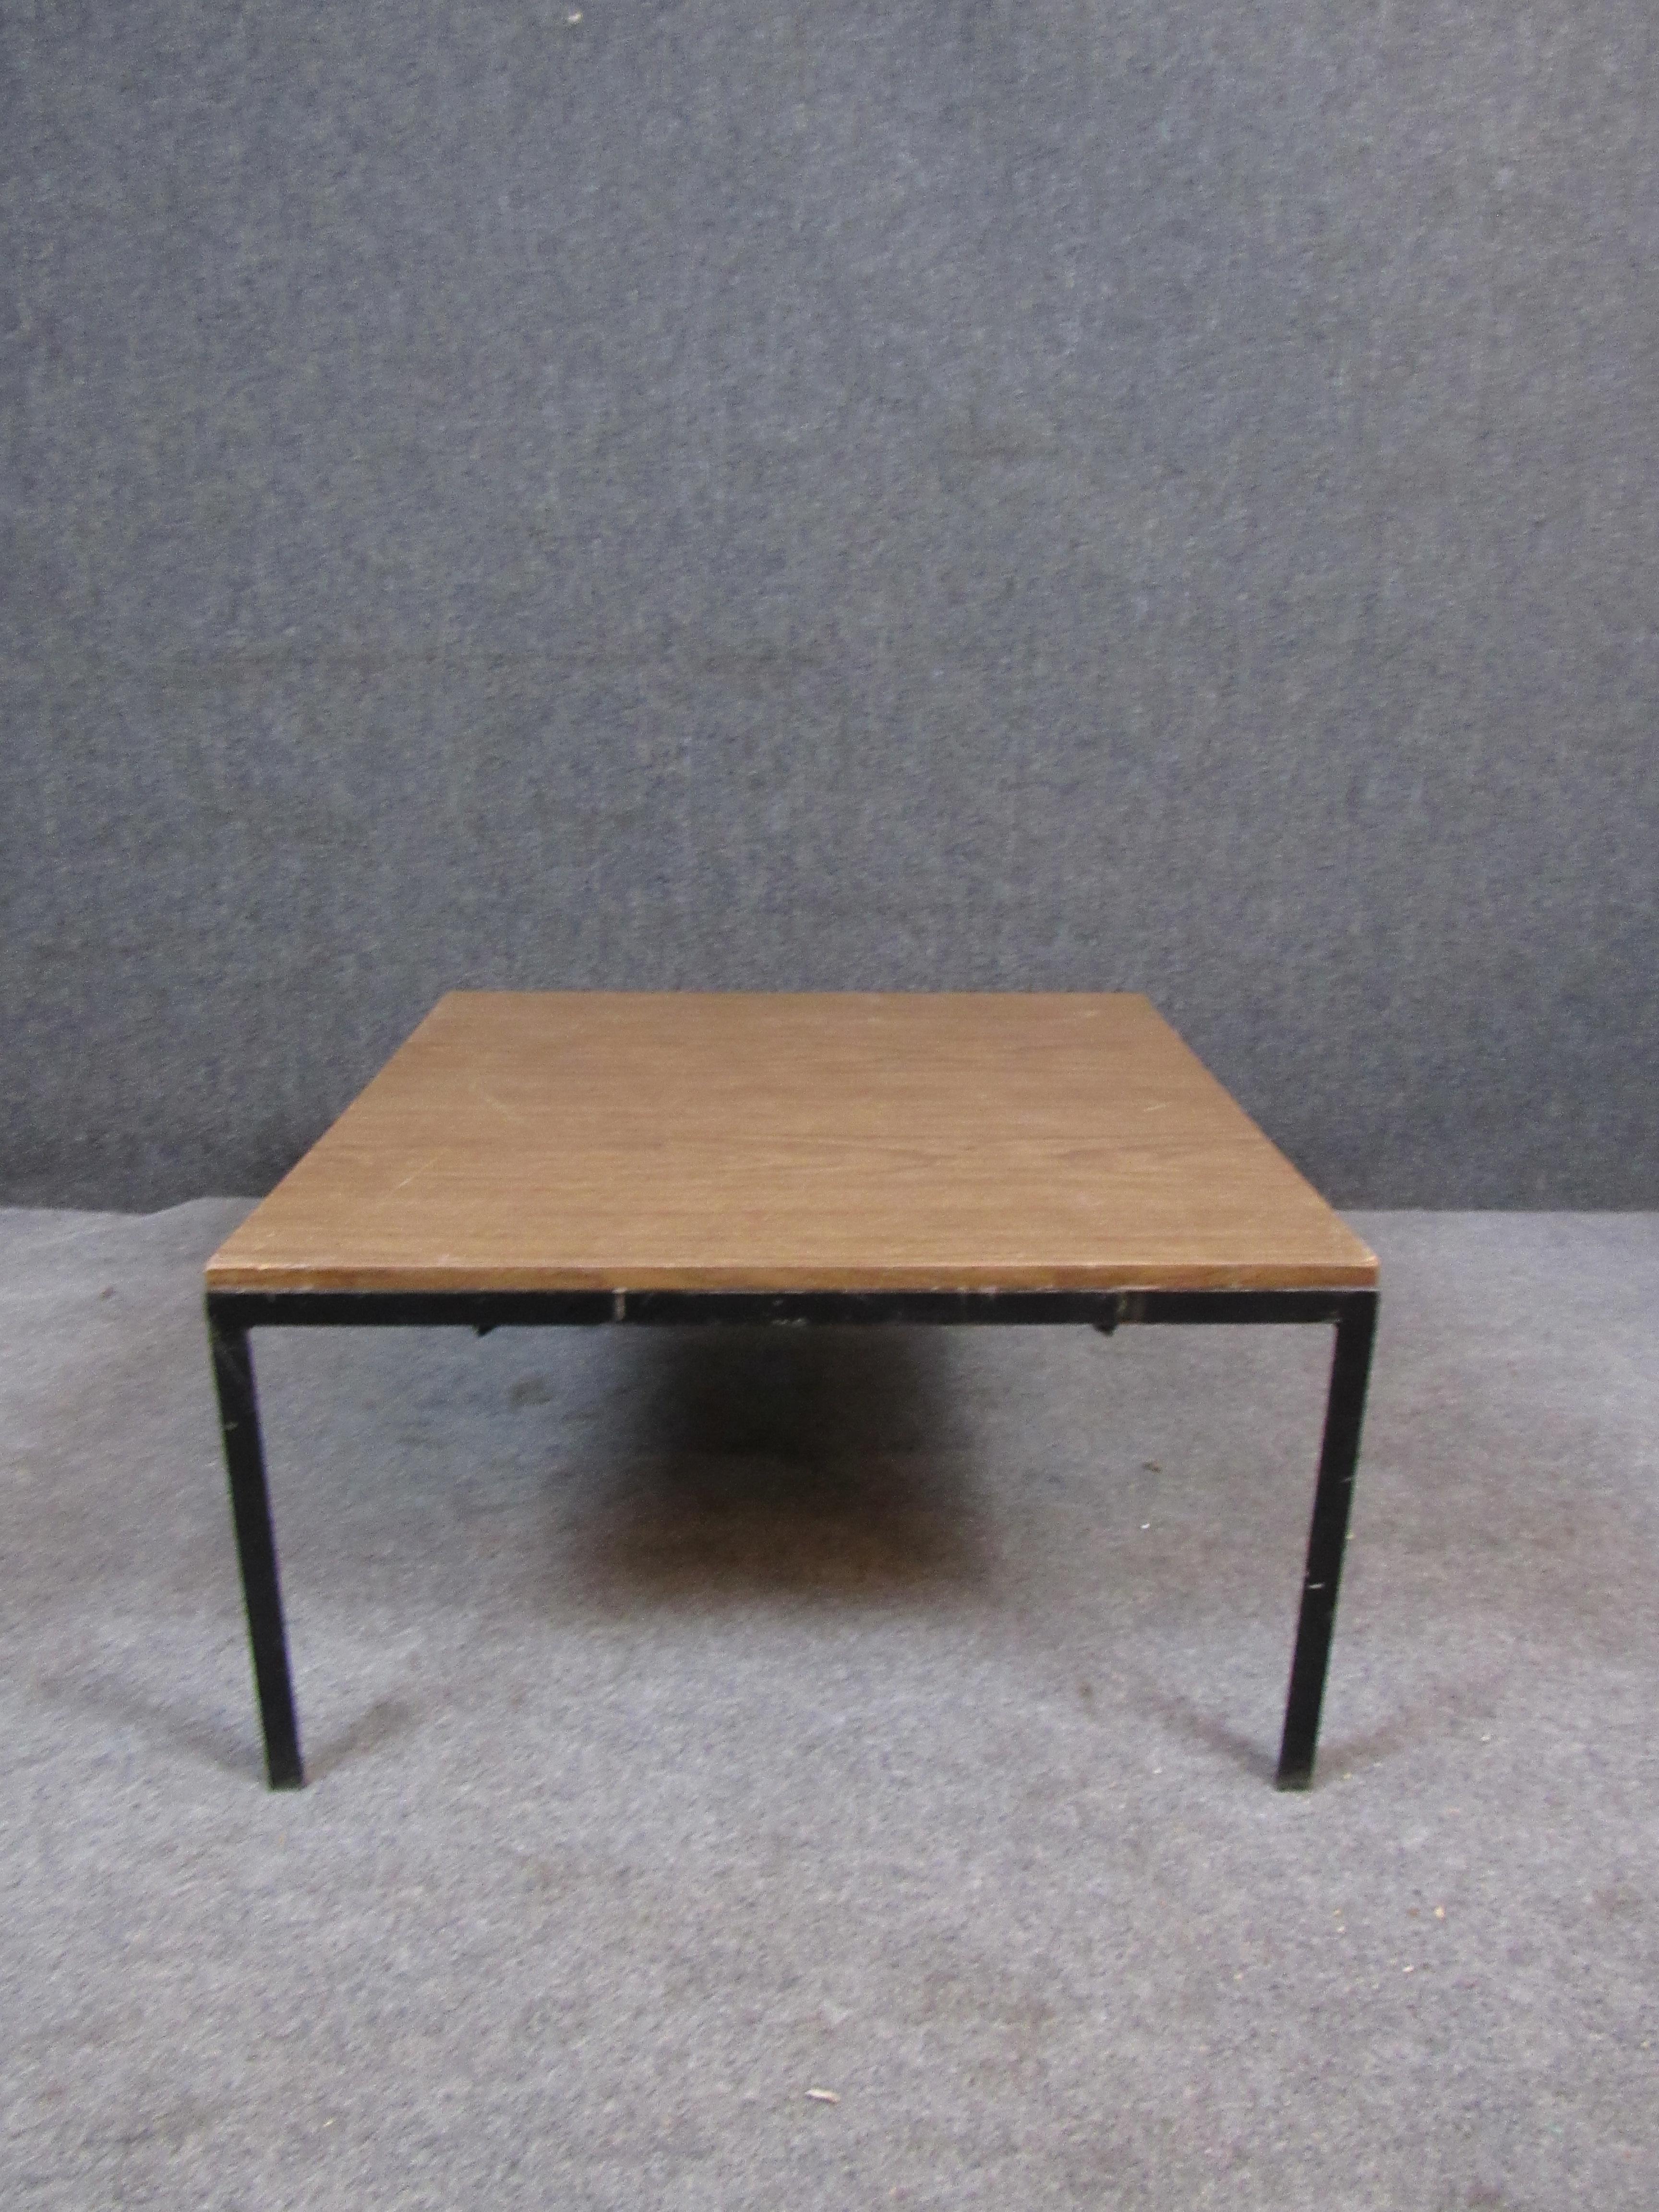 Apportez chez vous le côté pratique et minimaliste qui a contribué à rendre le design moderne du milieu du siècle si populaire. Cette table basse carrée a été fortement inspirée par la table emblématique 